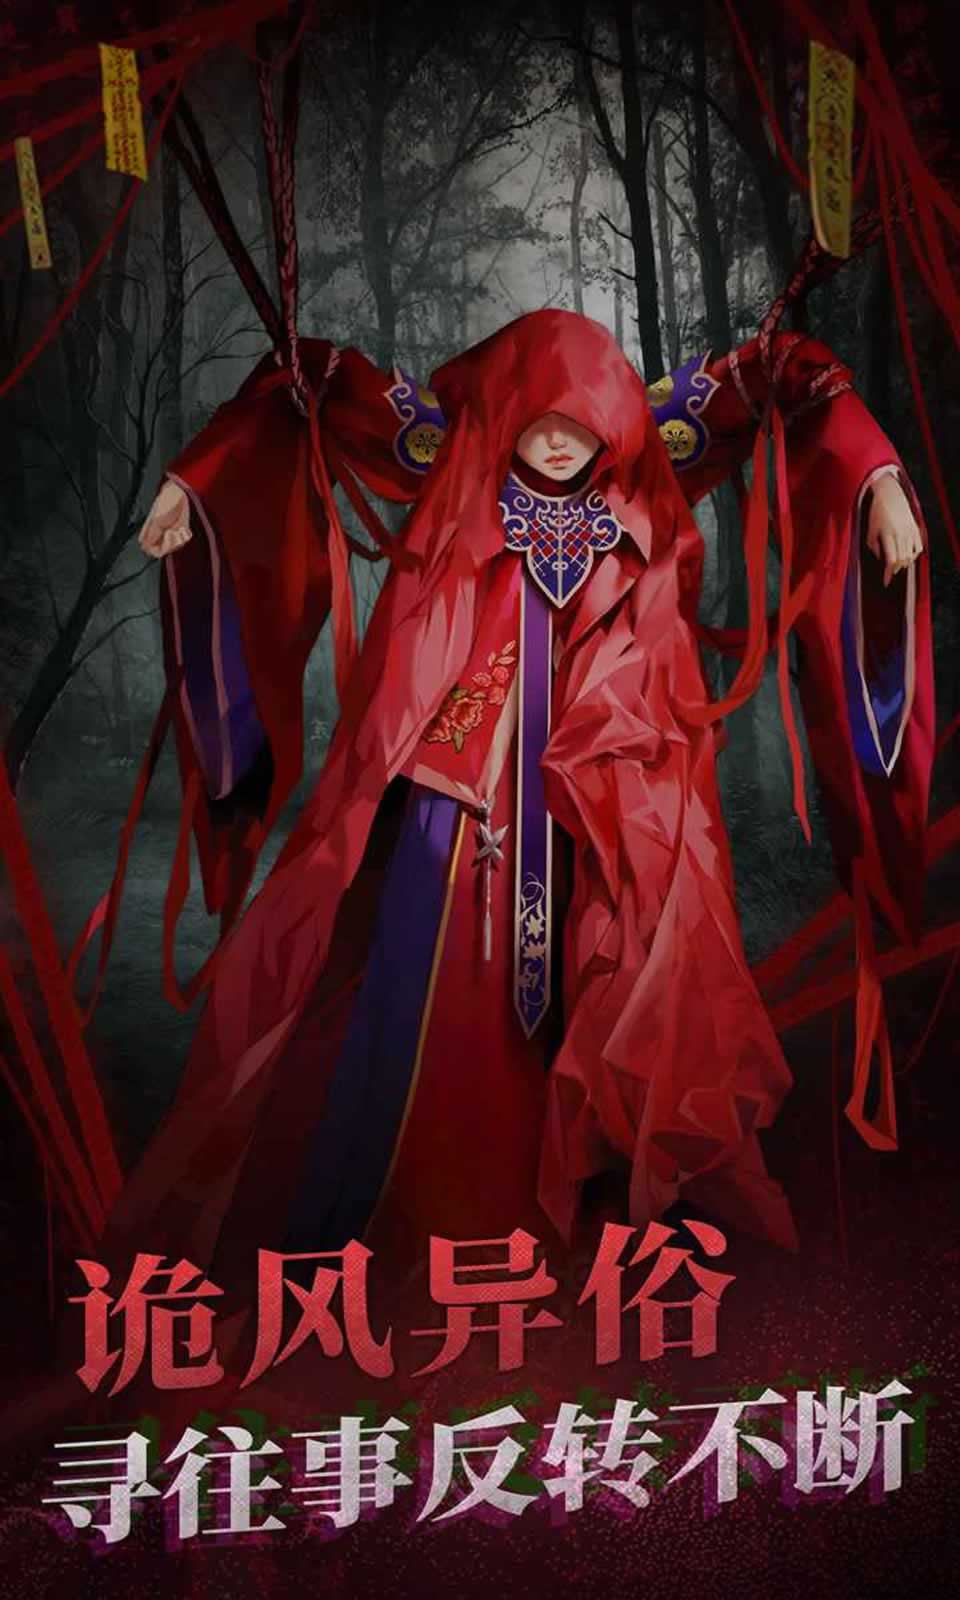 纸嫁衣2奘铃村》是一款备受玩家们期待的具有中式恐怖元素的解谜游戏